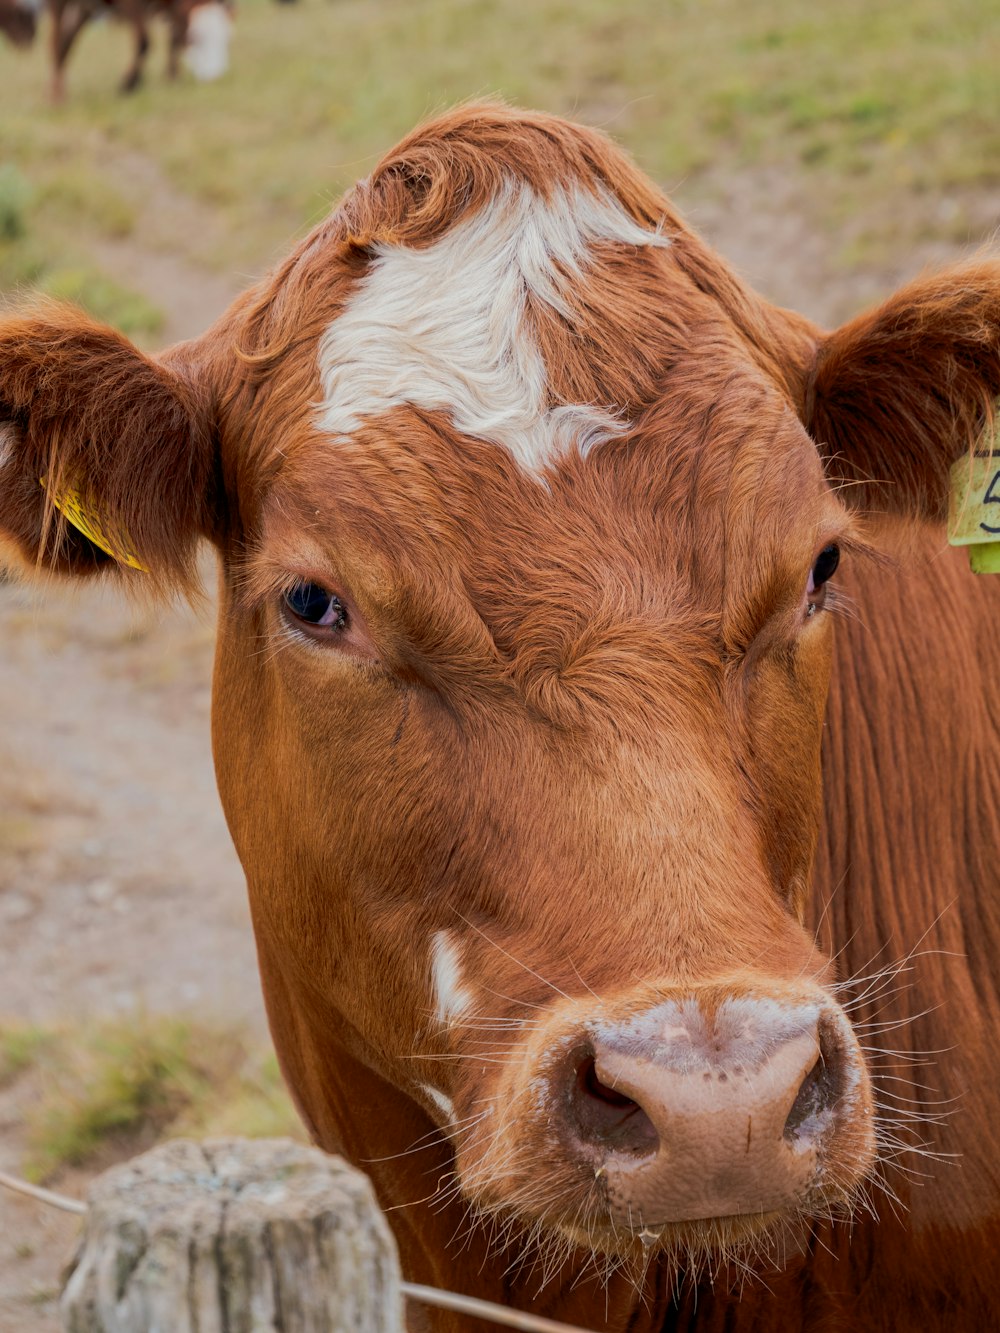 a close up of a brown cow with a tag on it's ear